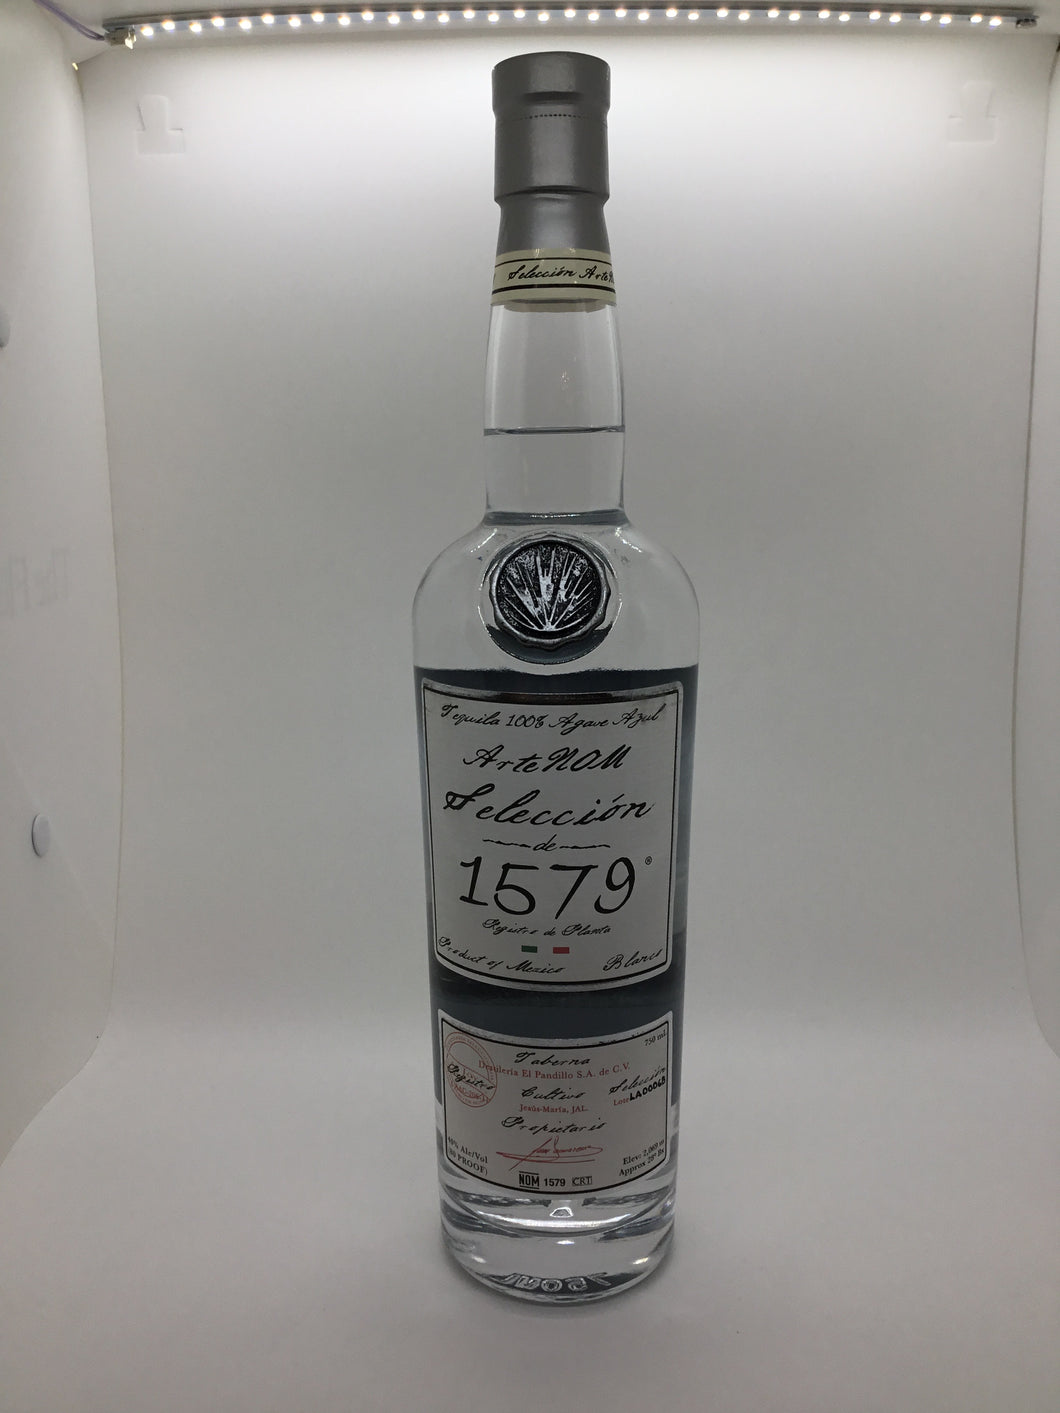 ArteNOM Tequila Blanco “1579” 750ml